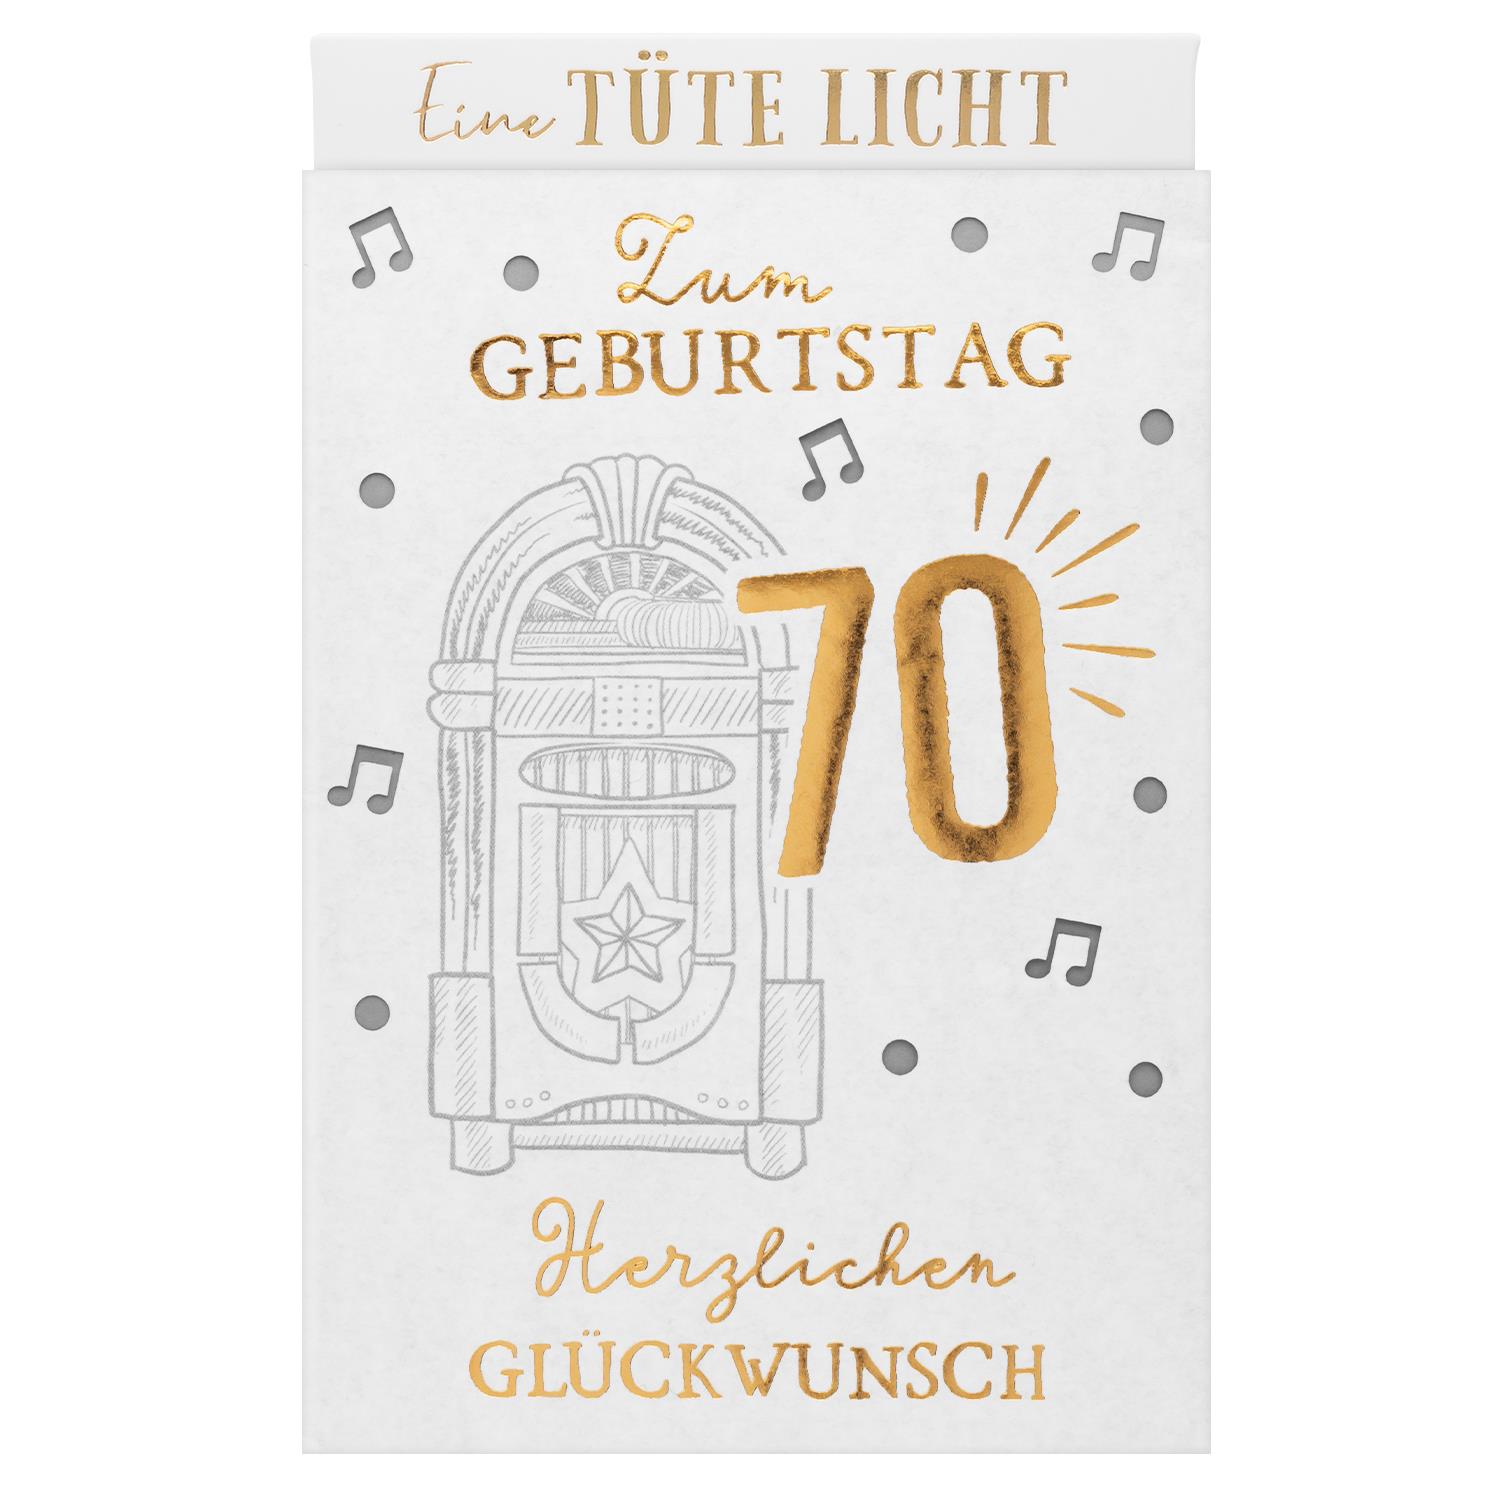 Lichttüte »Zum 70. Geburtstag Herzlichen GLÜCKWUNSCH!«